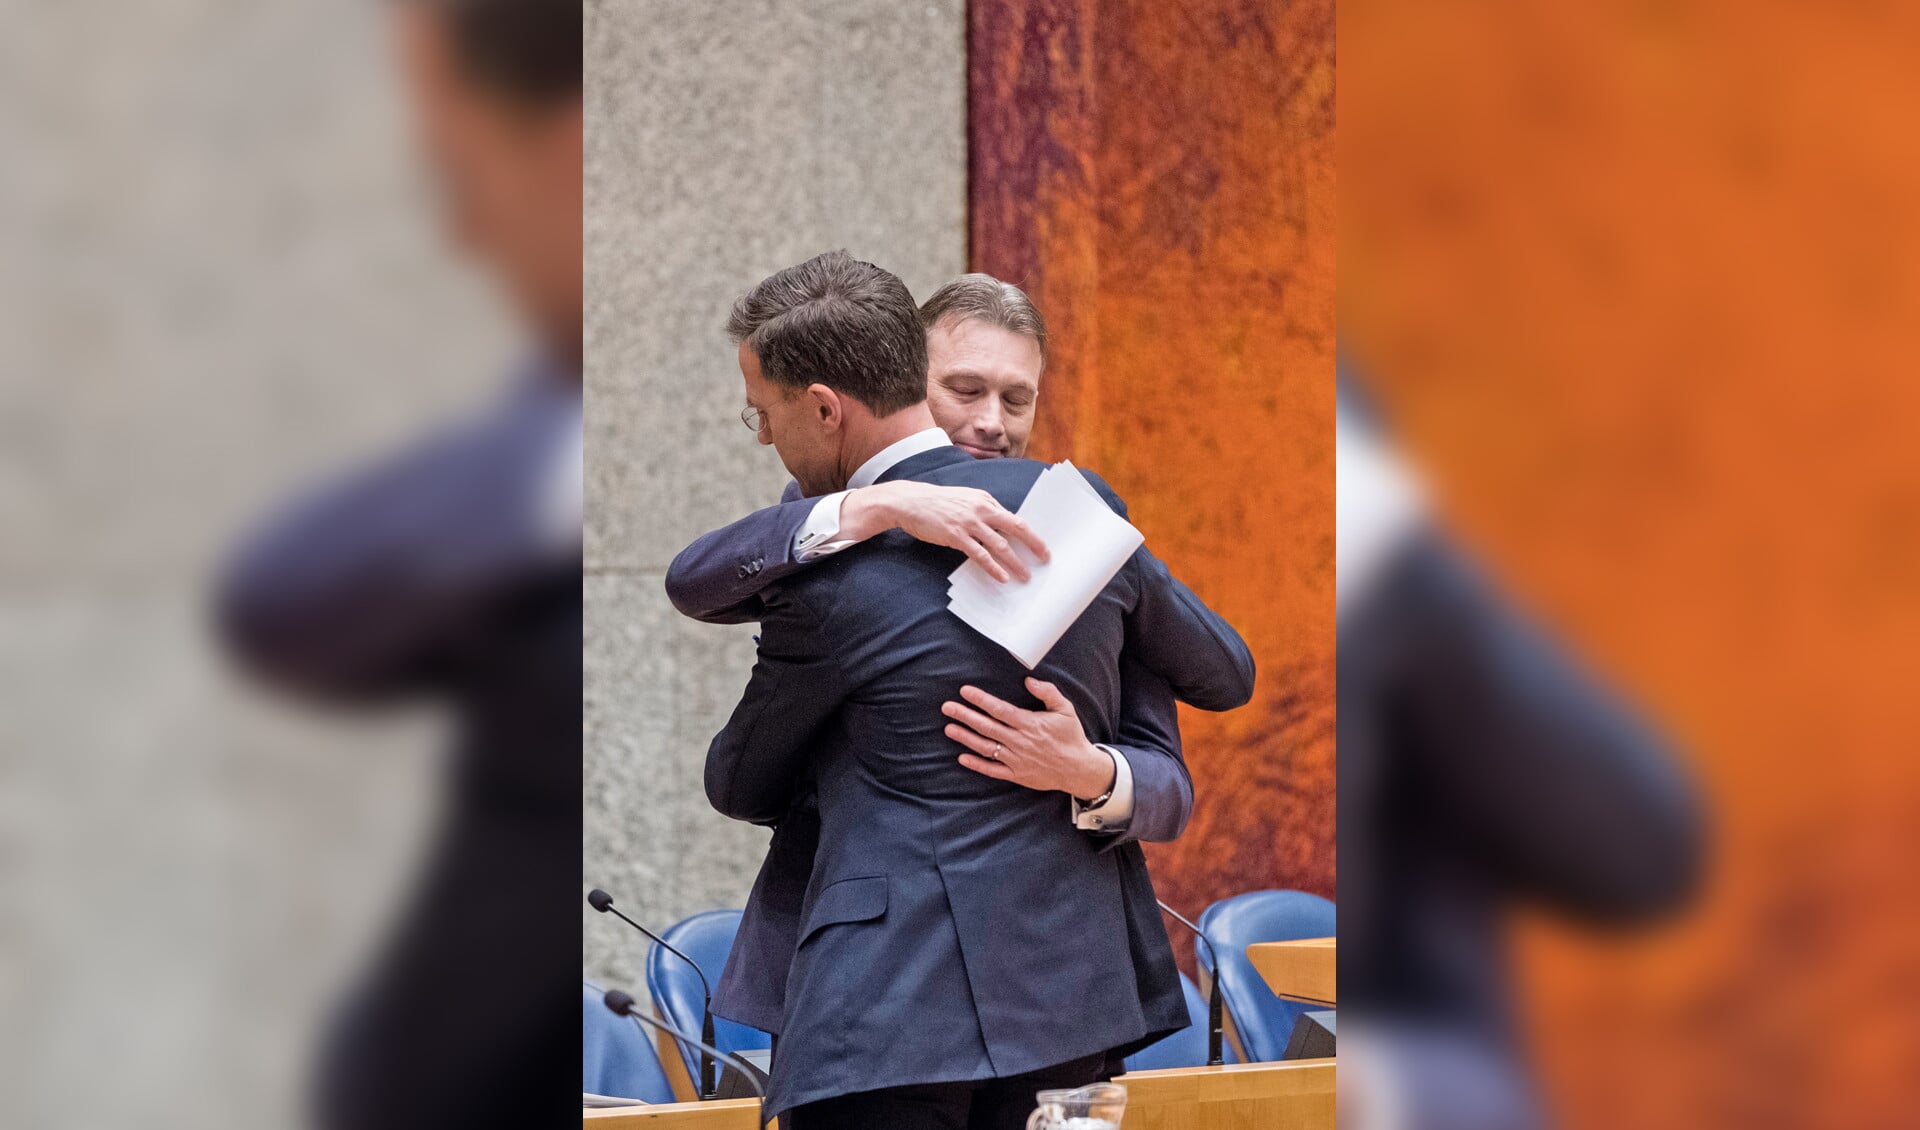 Aftredend minister Halbe Zijlstra omhelst premier Mark Rutte nadat die verklaard had het persoonlijk moeilijk te hebben met Zijlstra’s vertrek.